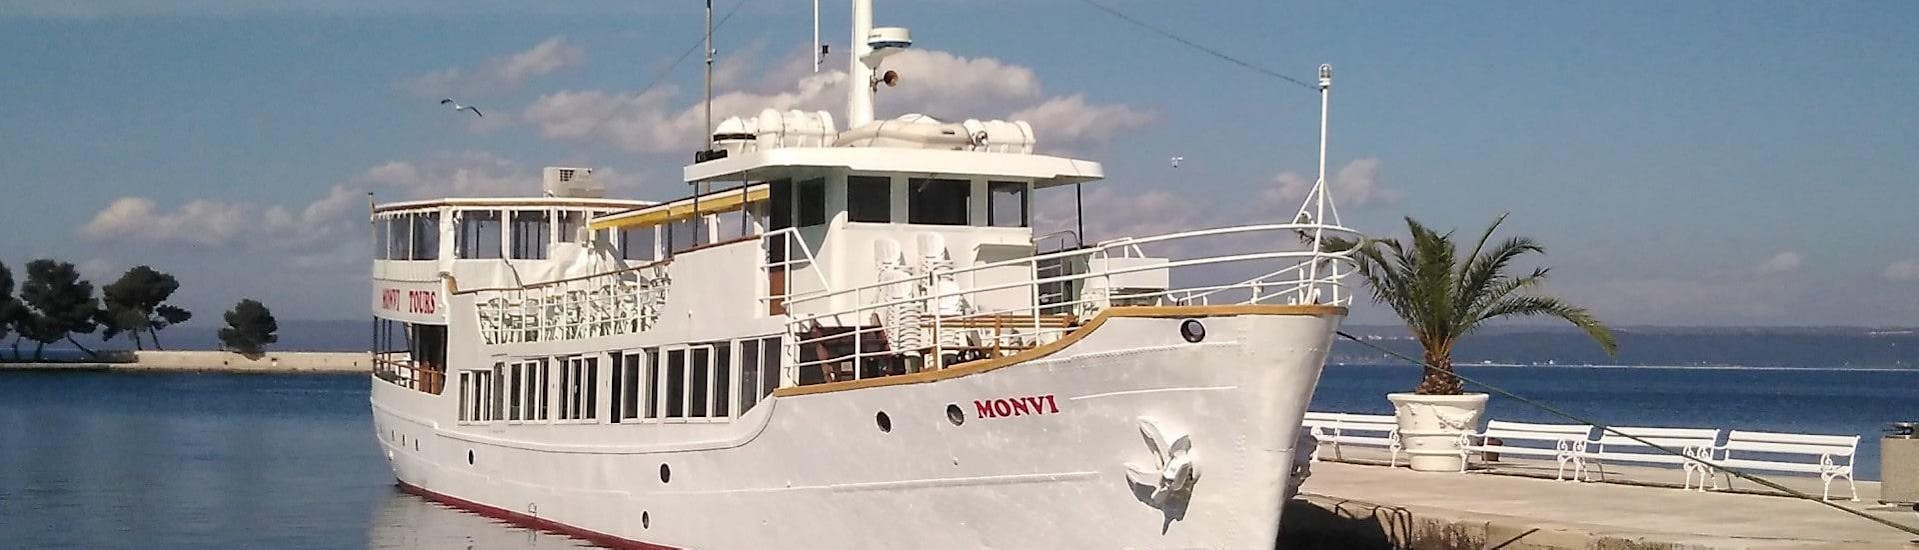 Boot in de haven tijdens de boottocht naar Rovinj en Vrsar met lunch georganiseerd door Monvi Tours Poreč.